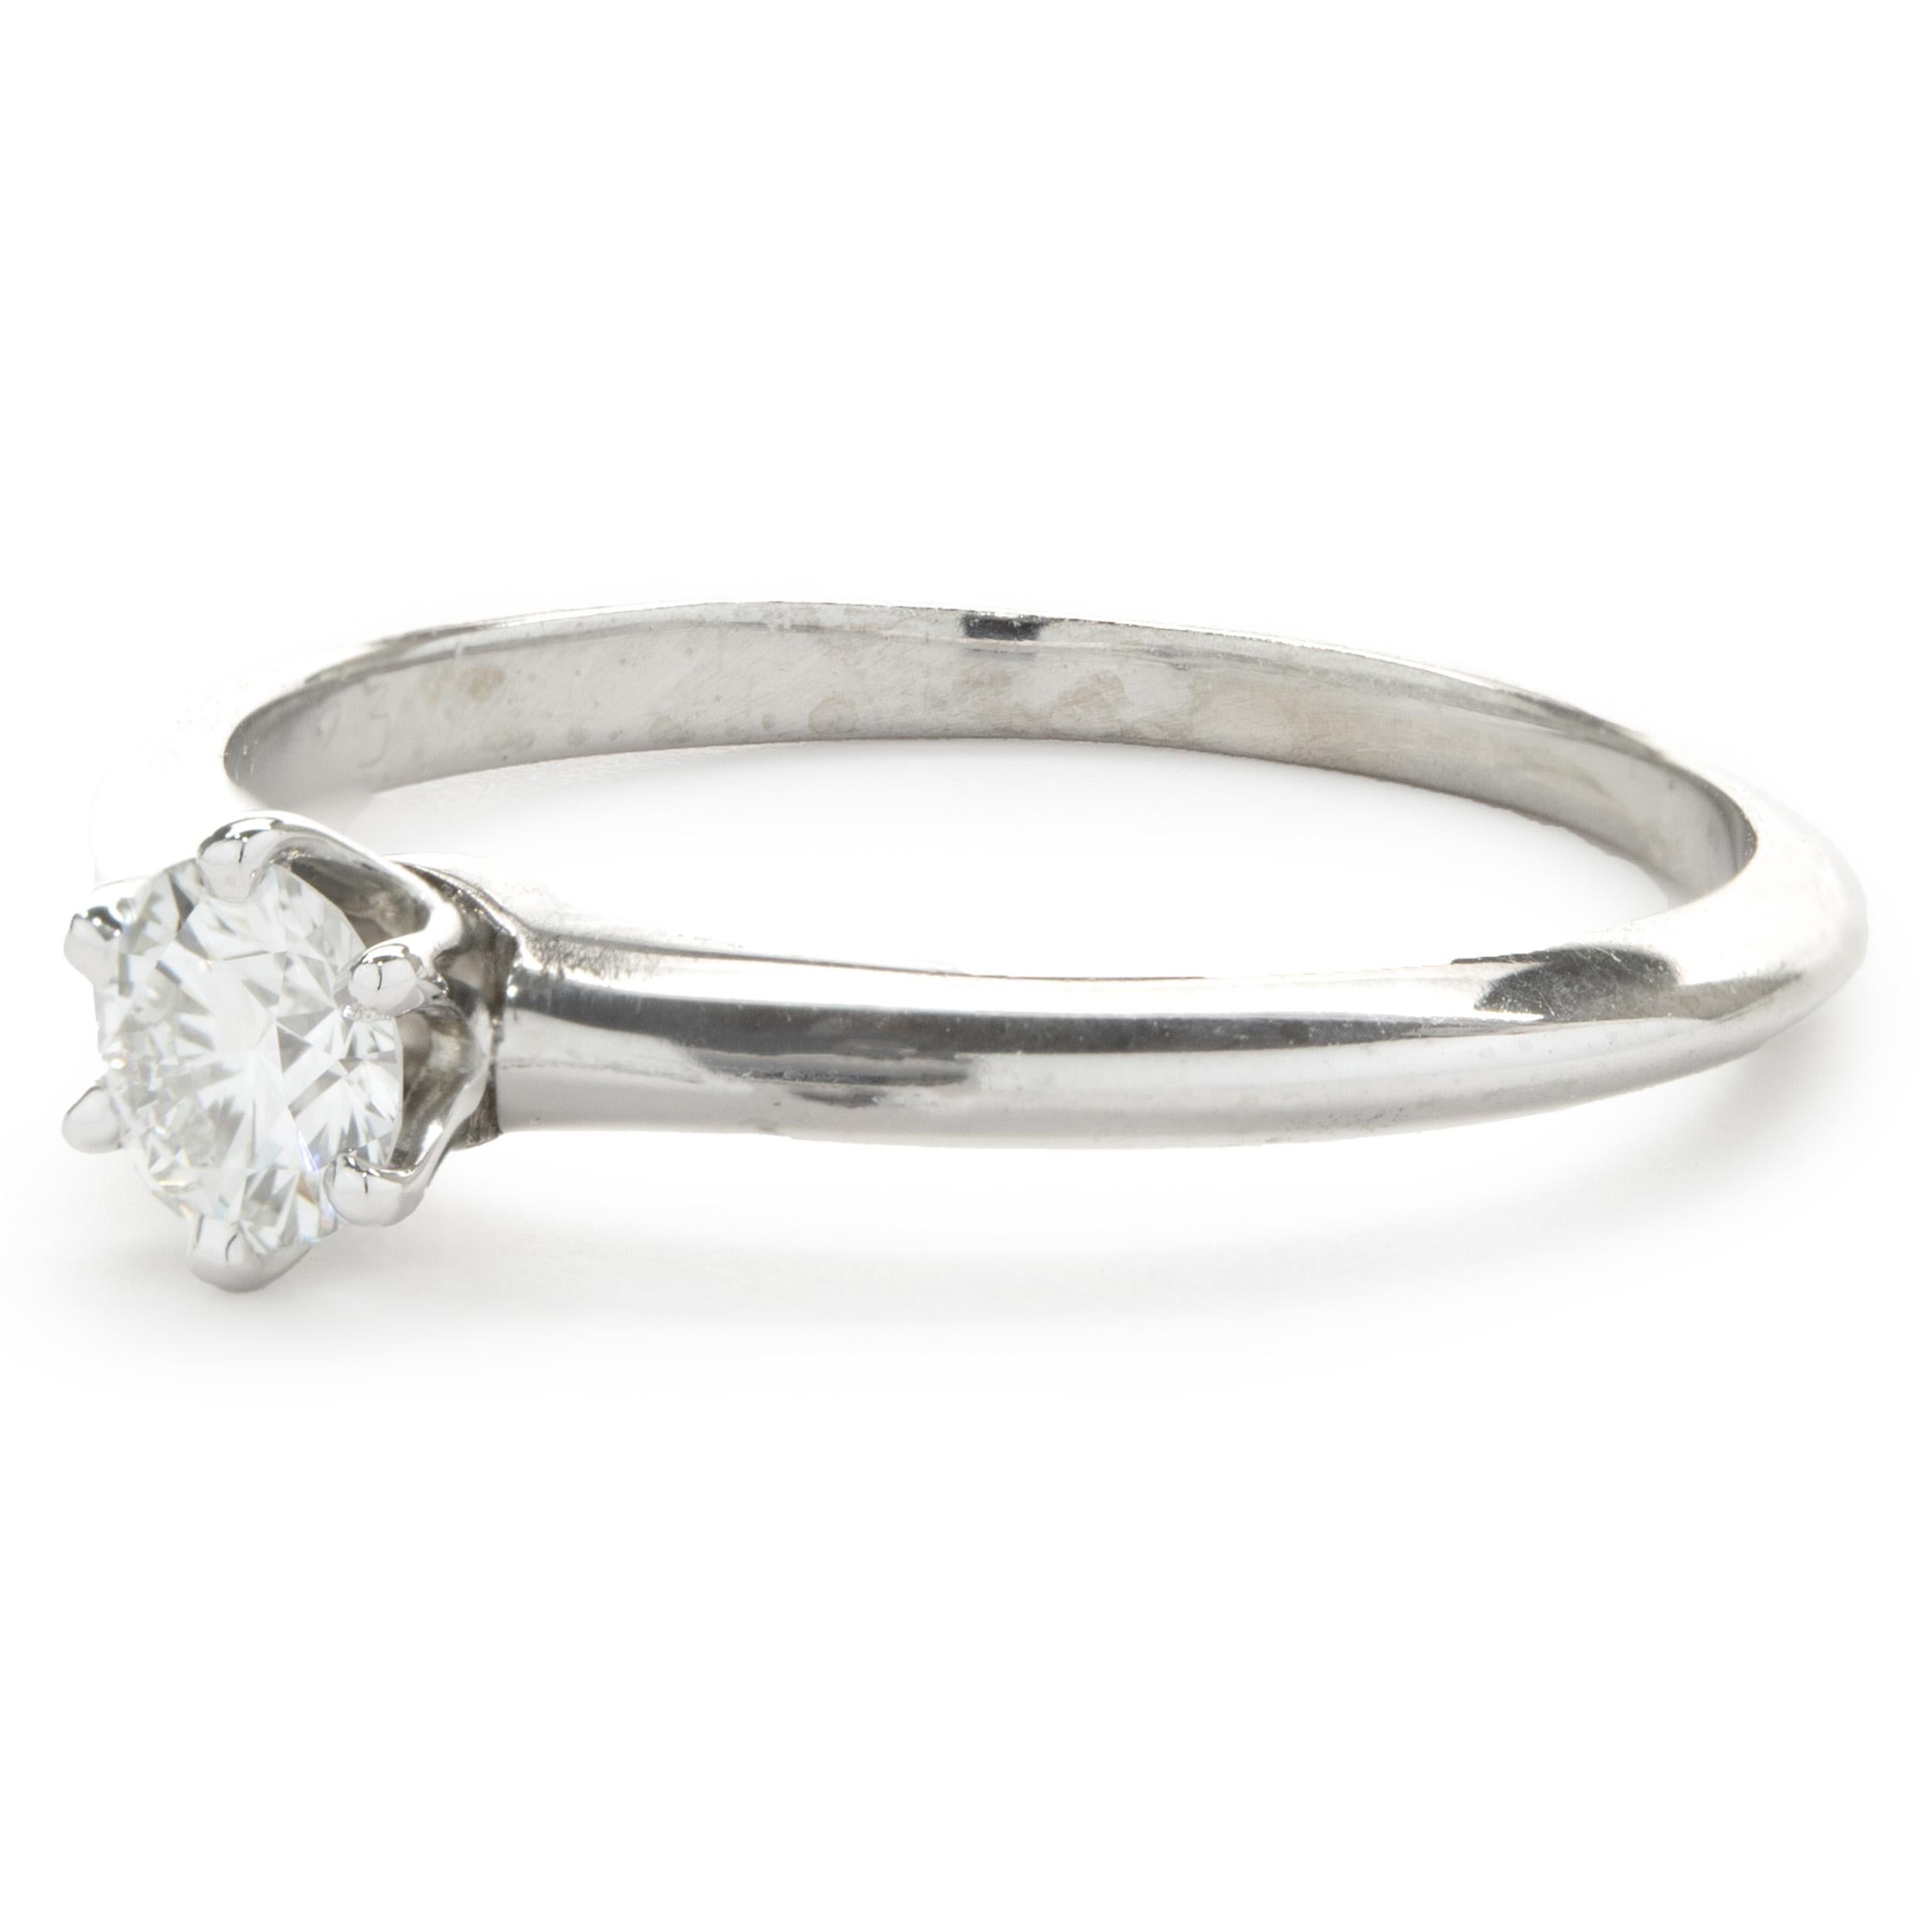 Designer: Tiffany & Co. 
Material: Platin
Diamant: 1 runder Brillantschliff = 0,23ct
Farbe: F
Klarheit: VS1
Größe: 5.5 (kostenlose Größenanpassung möglich)
Abmessungen: Die Ringspitze ist 4,80 mm breit
Gewicht: 2,60 Gramm